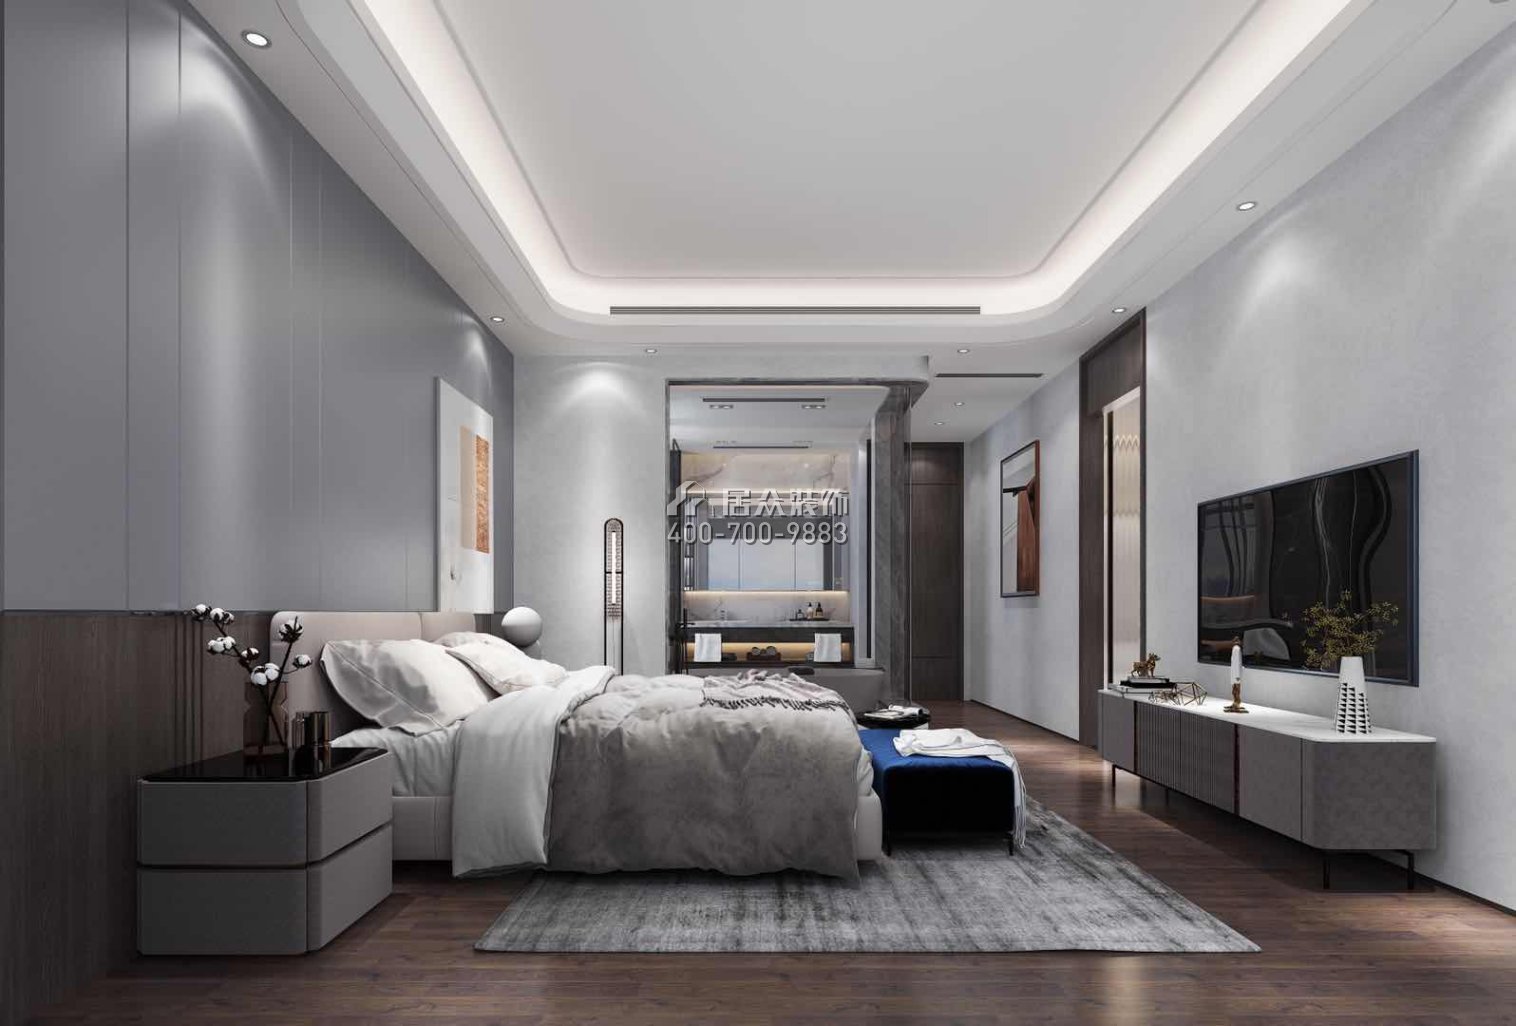 天骄峰景190平方米现代简约风格平层户型卧室装修效果图